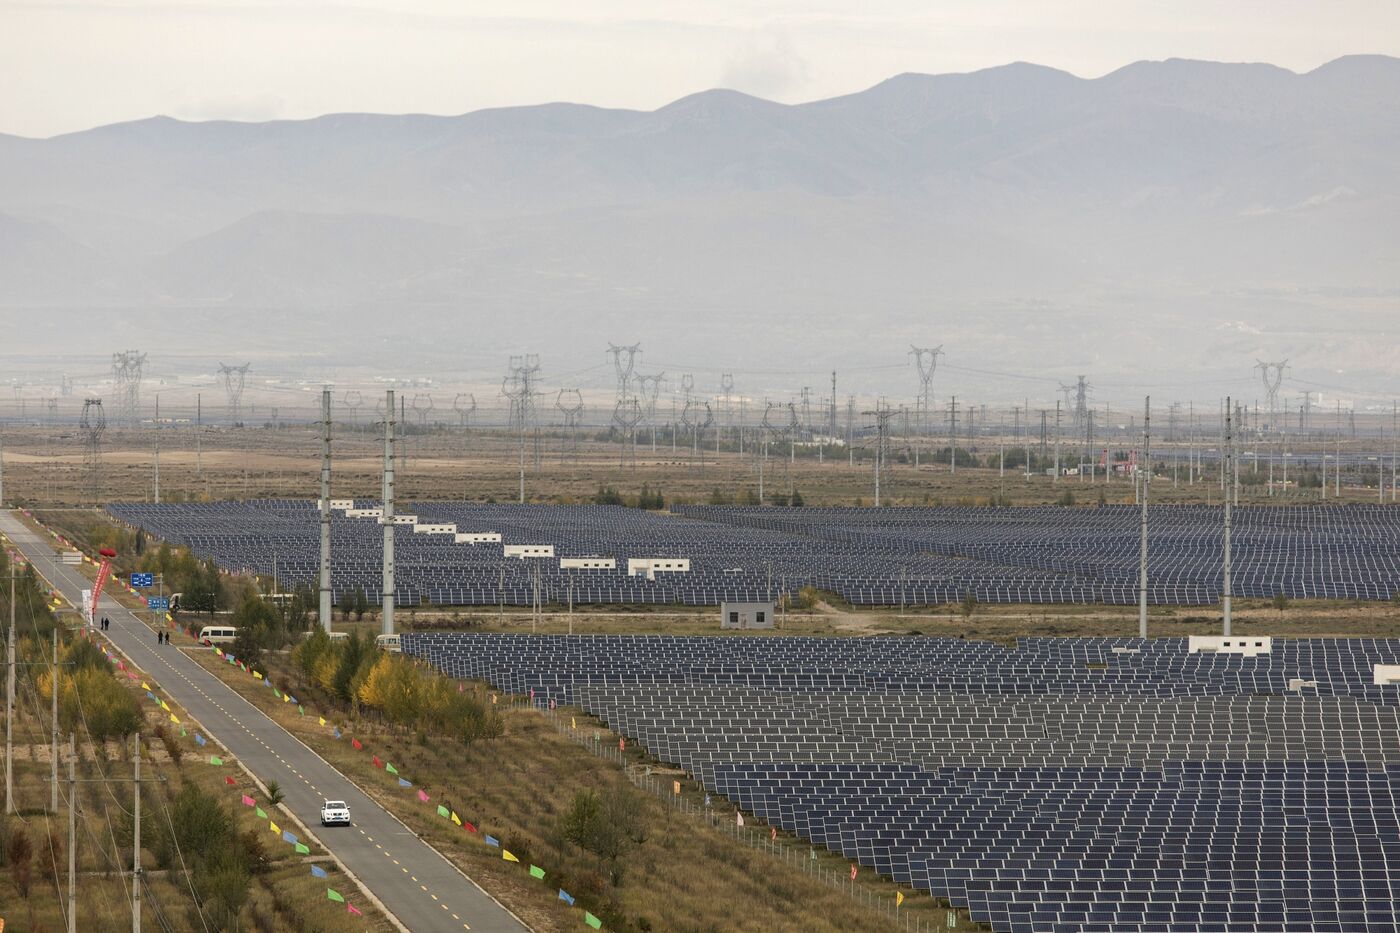 se relaciona con el plan de $ 300 mil millones para llevar energía verde a las megaciudades de China